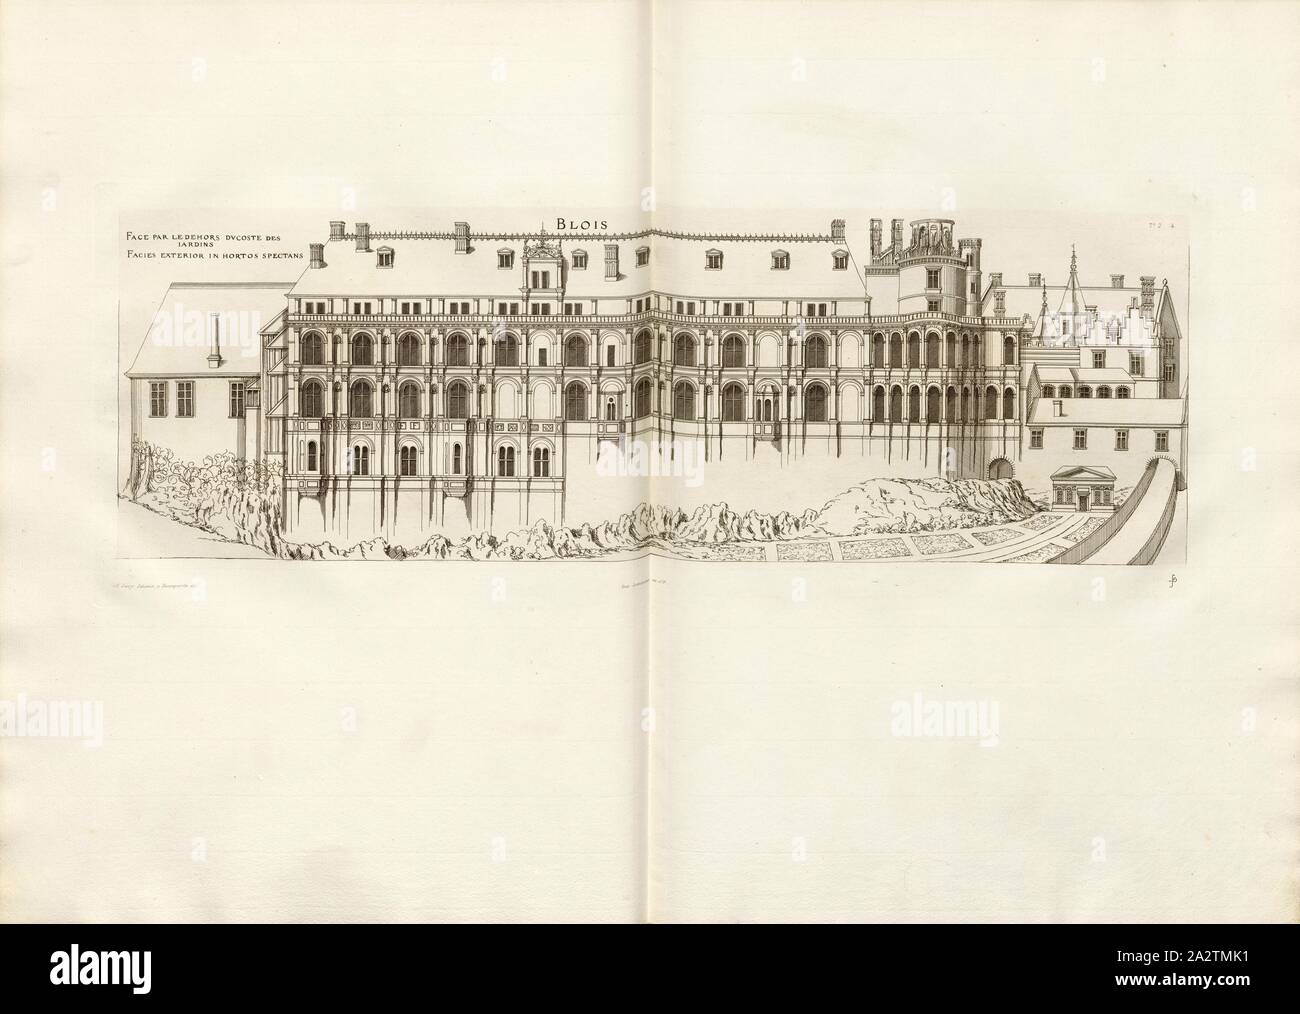 Blois. Rivolta verso l'esterno del costo dei giardini, Château de Blois in Francia, firmato: FD; Imp. Lemercier et Cie, A. Lévy (ed.), Fig. 5, T. 2. 4., Cerceau, Jacques Androuet du (CANC.); Faure-Dujarric, Pierre-Lucien (sc.); Lemercier (imp.); Levy, A. (ed.), 1868, Jacques Androuet du Cerceau; Hippolyte A. Destailleur: Les plus eccellenti bastiments de France. Parigi: A. Lévy, Libraire-Editeur, M DCCC LXVIII - M DCCC LXX. [1868-1870 Foto Stock